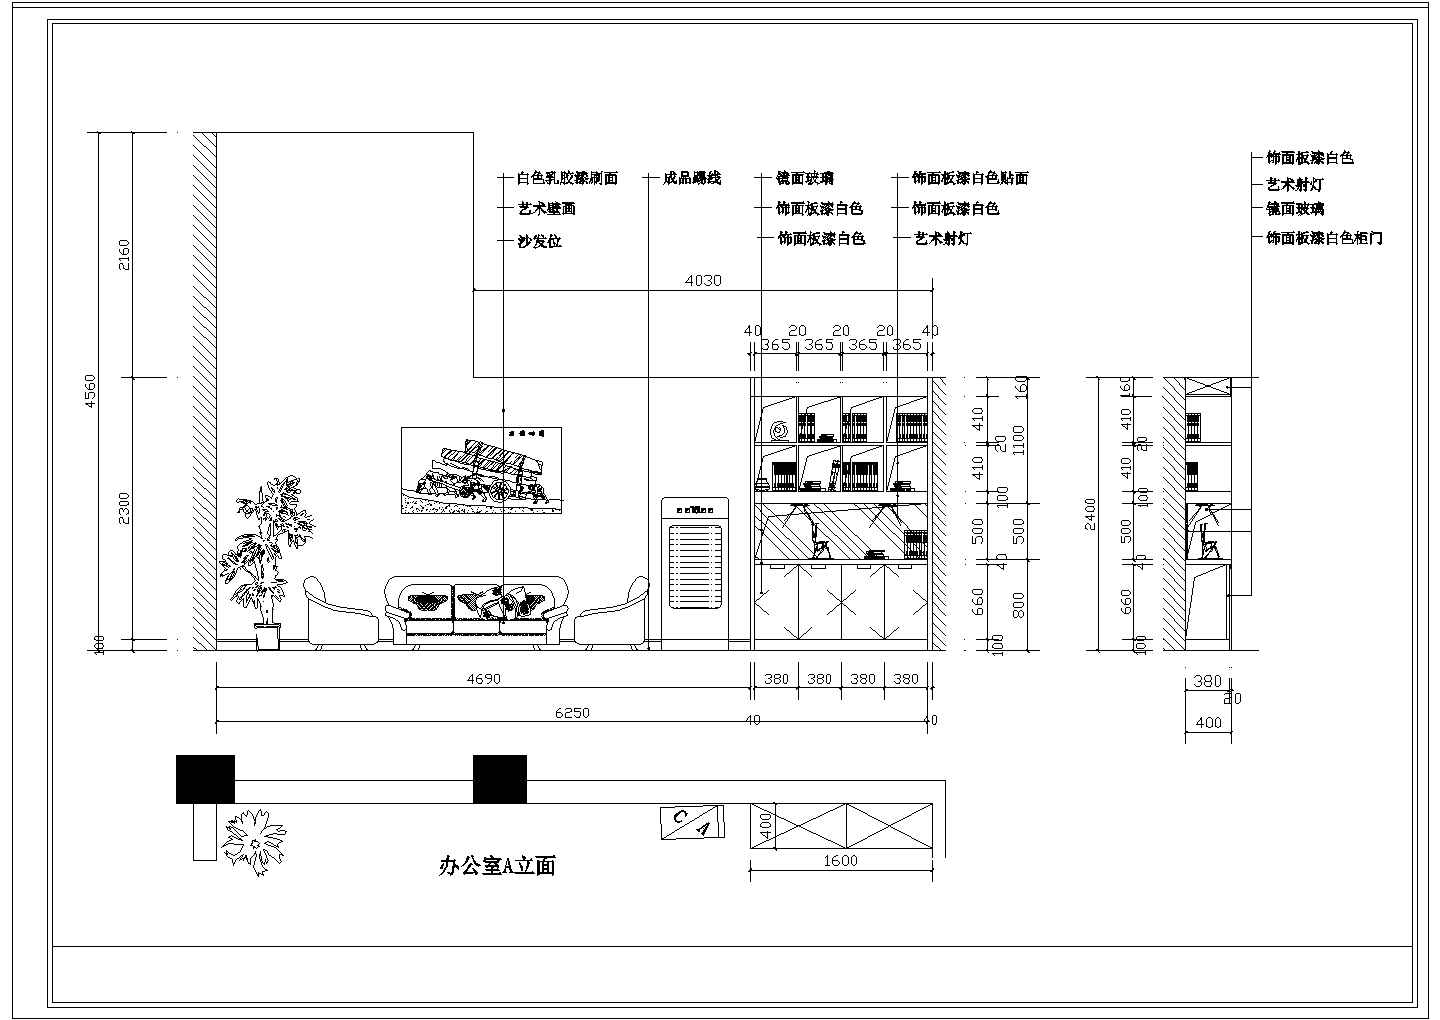 北京某会计律师所cad室内装修施工图